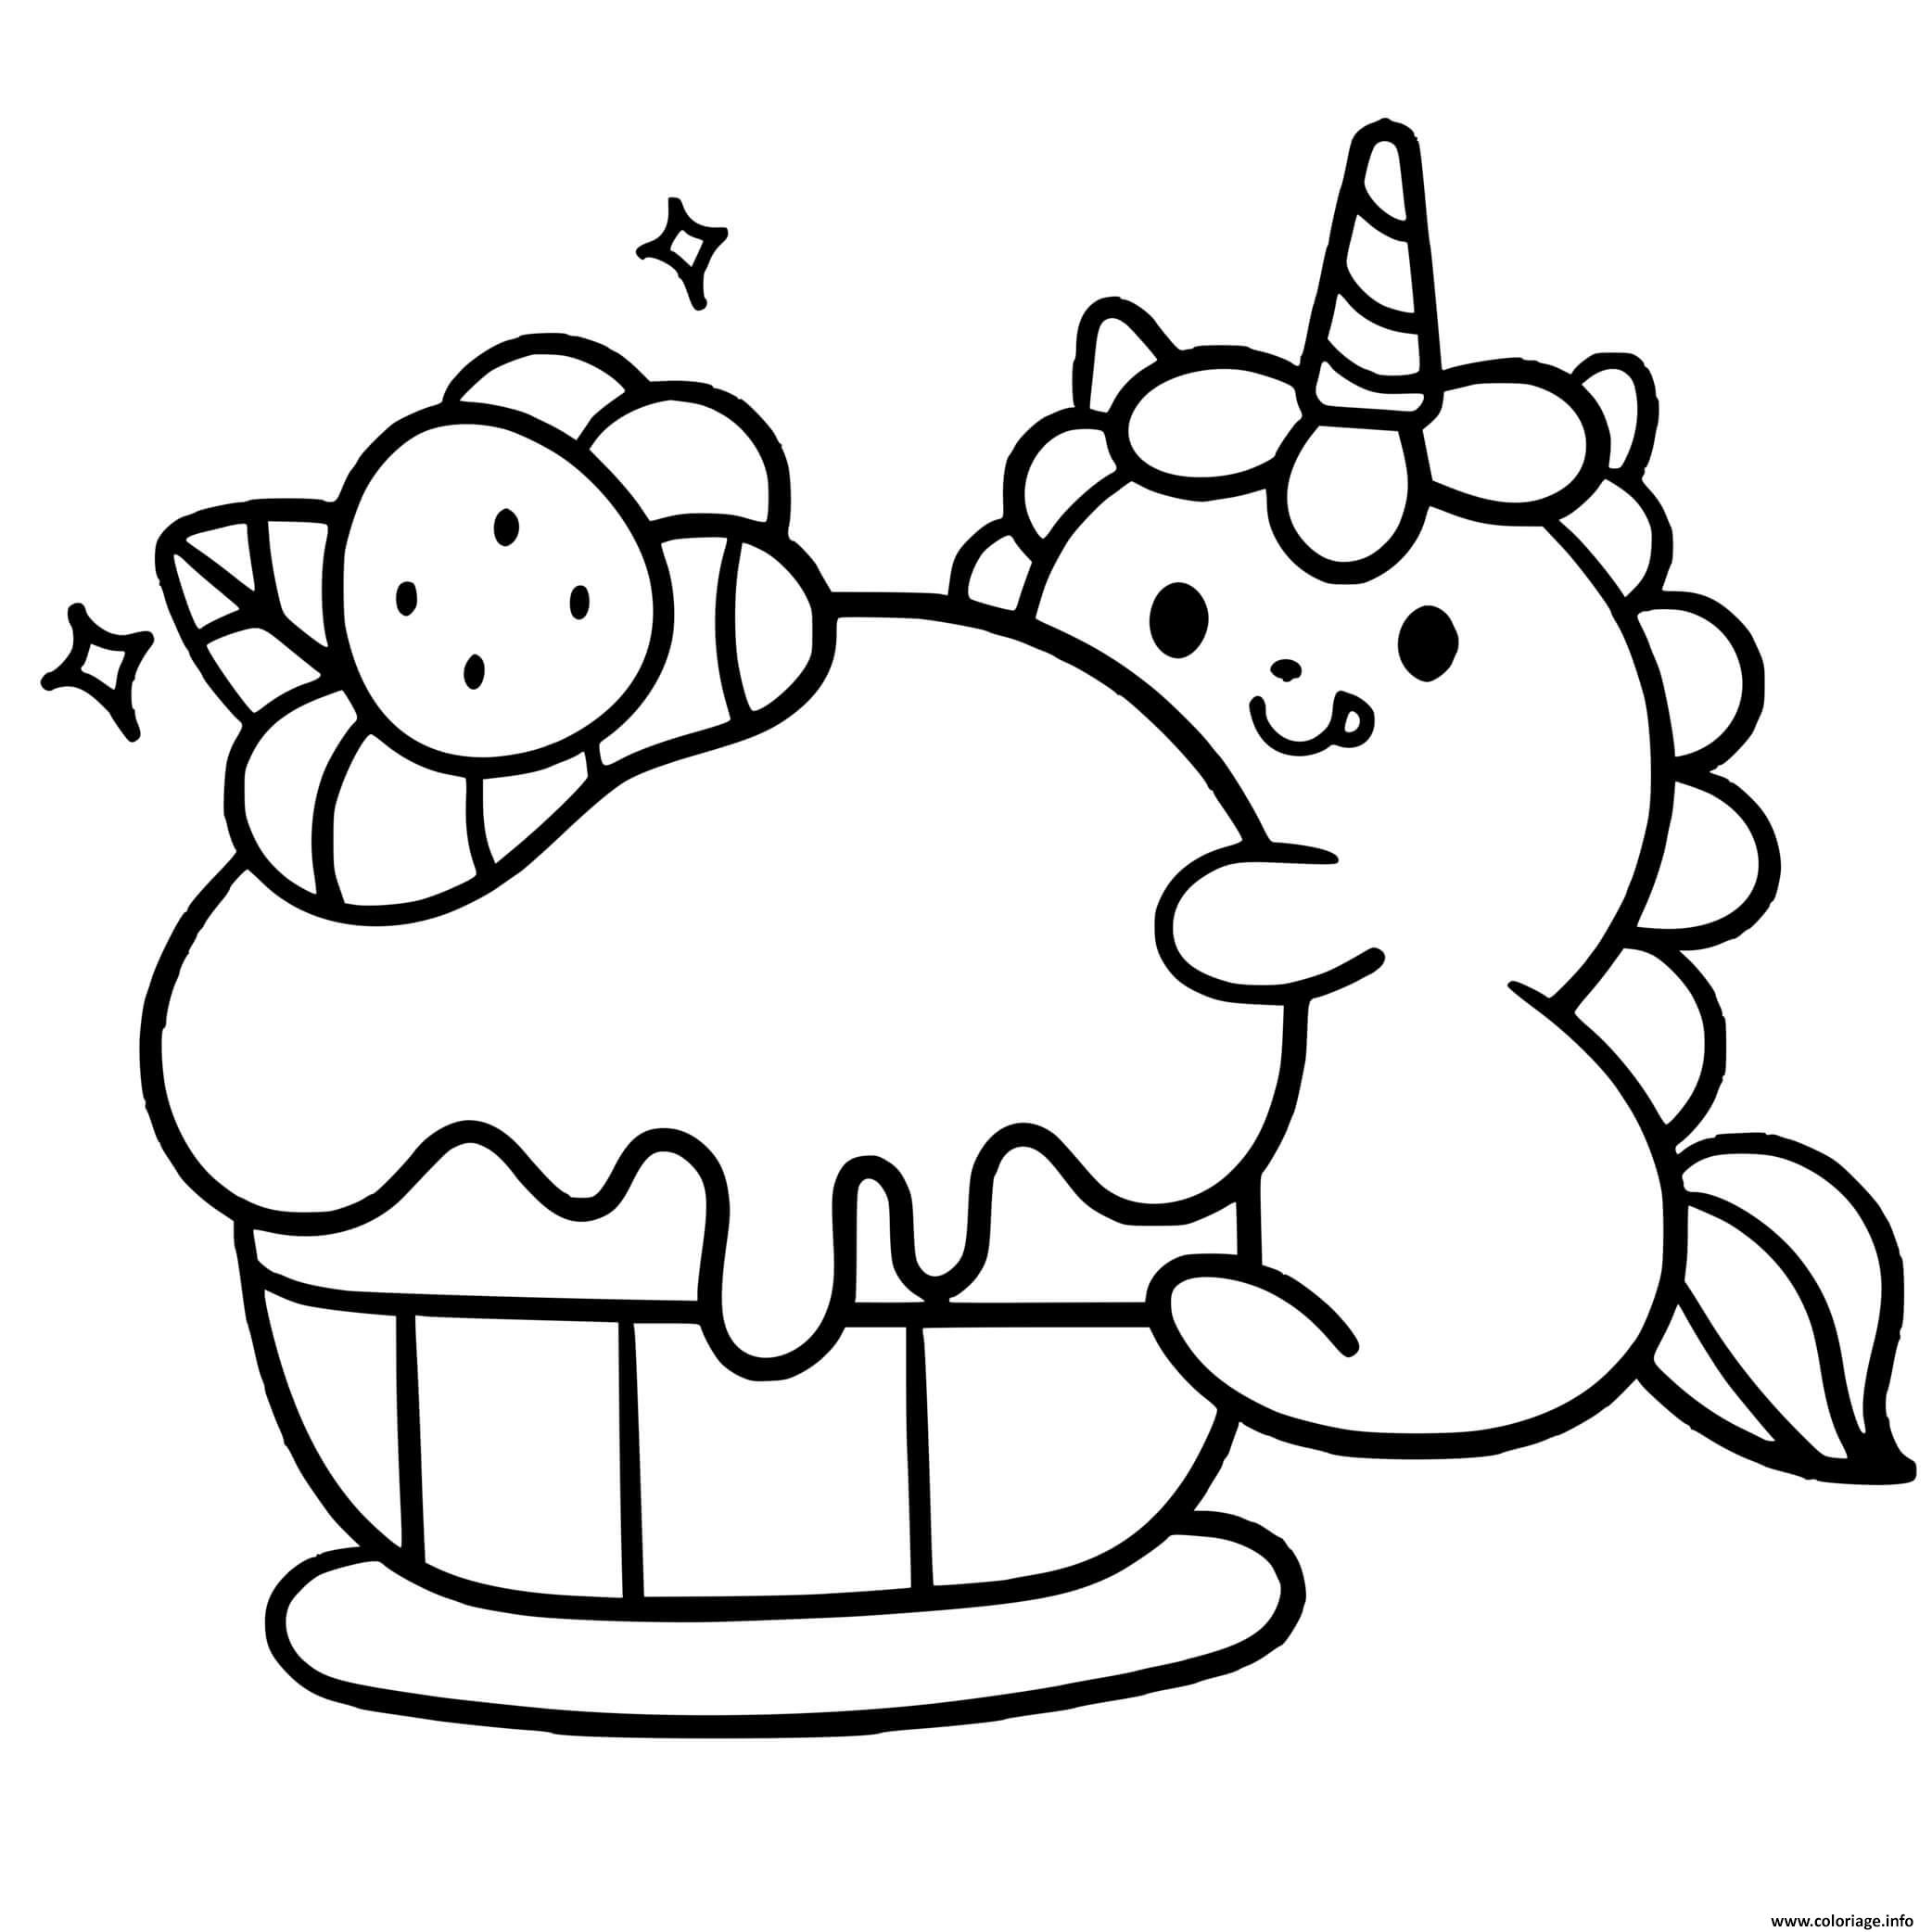 Dessin licorne kawaii cupcake Coloriage Gratuit à Imprimer